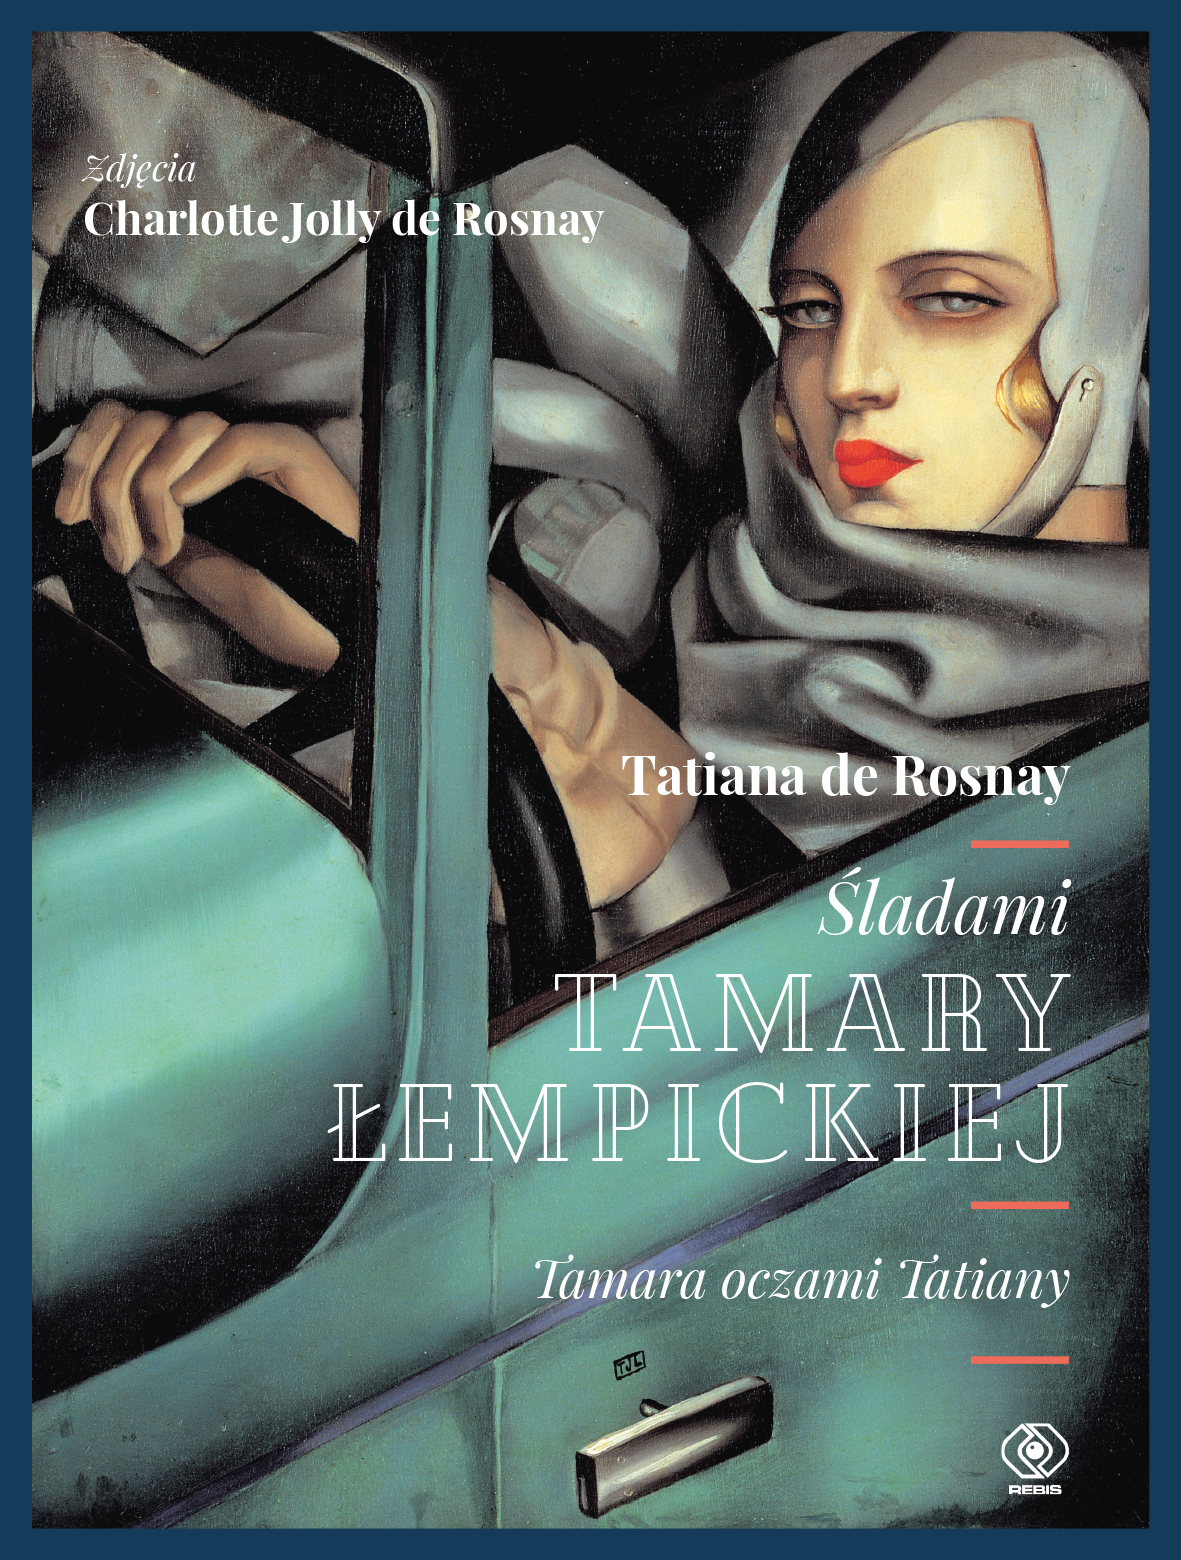  "Śladami Tamary Łempickiej", Tatiana de Rosnay